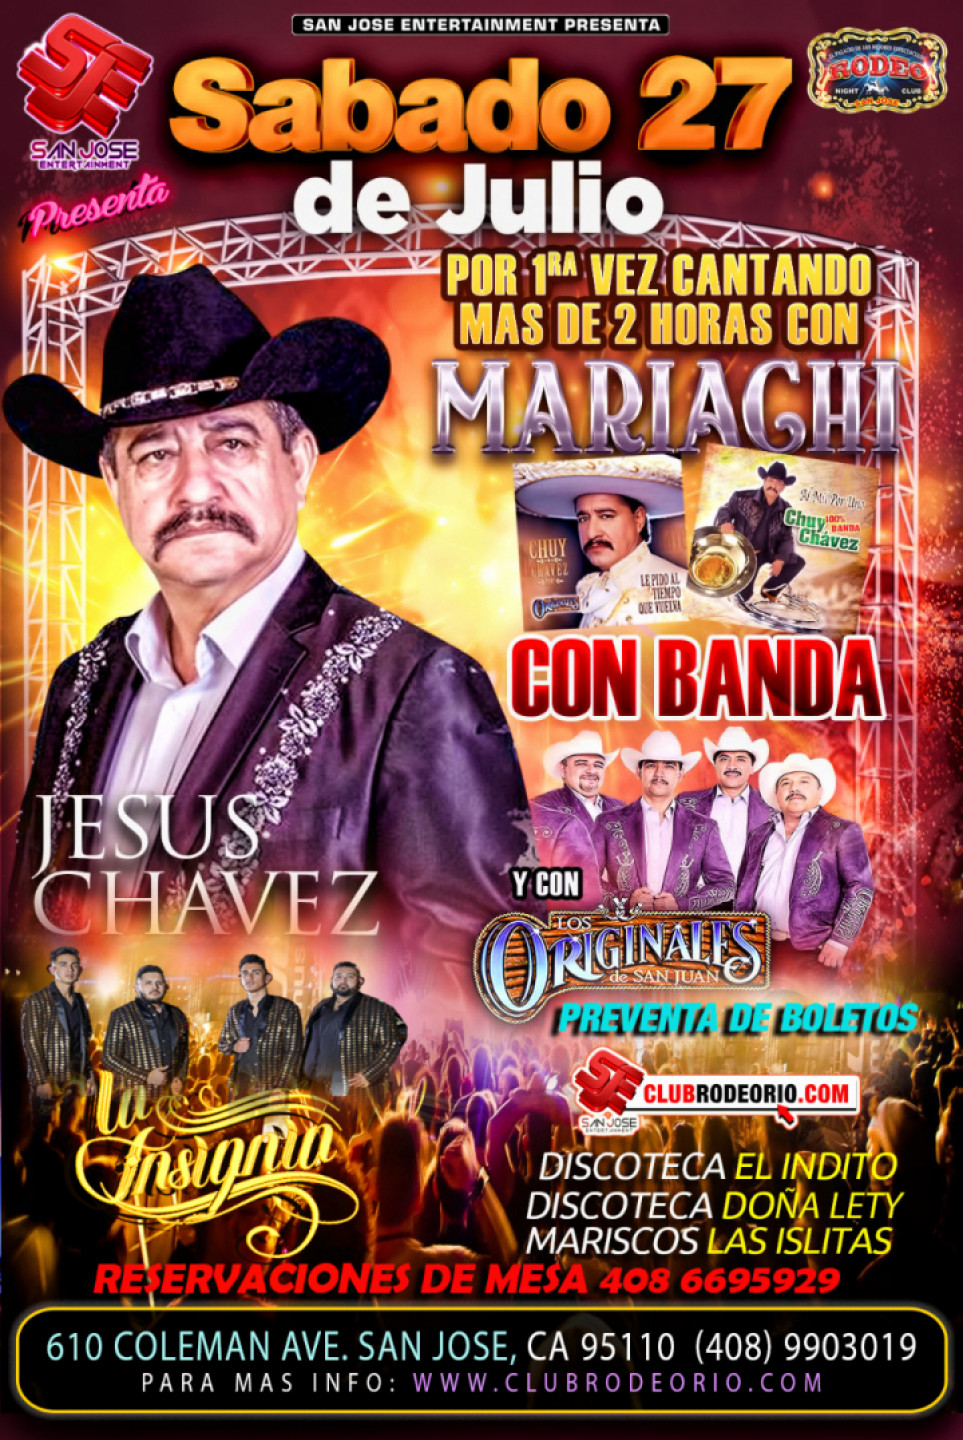 Chuy Chavez Con Banda,Mariachi y Los Originales de San Juan,Sabado 27 de Julio,Club Rodeo de San Jose